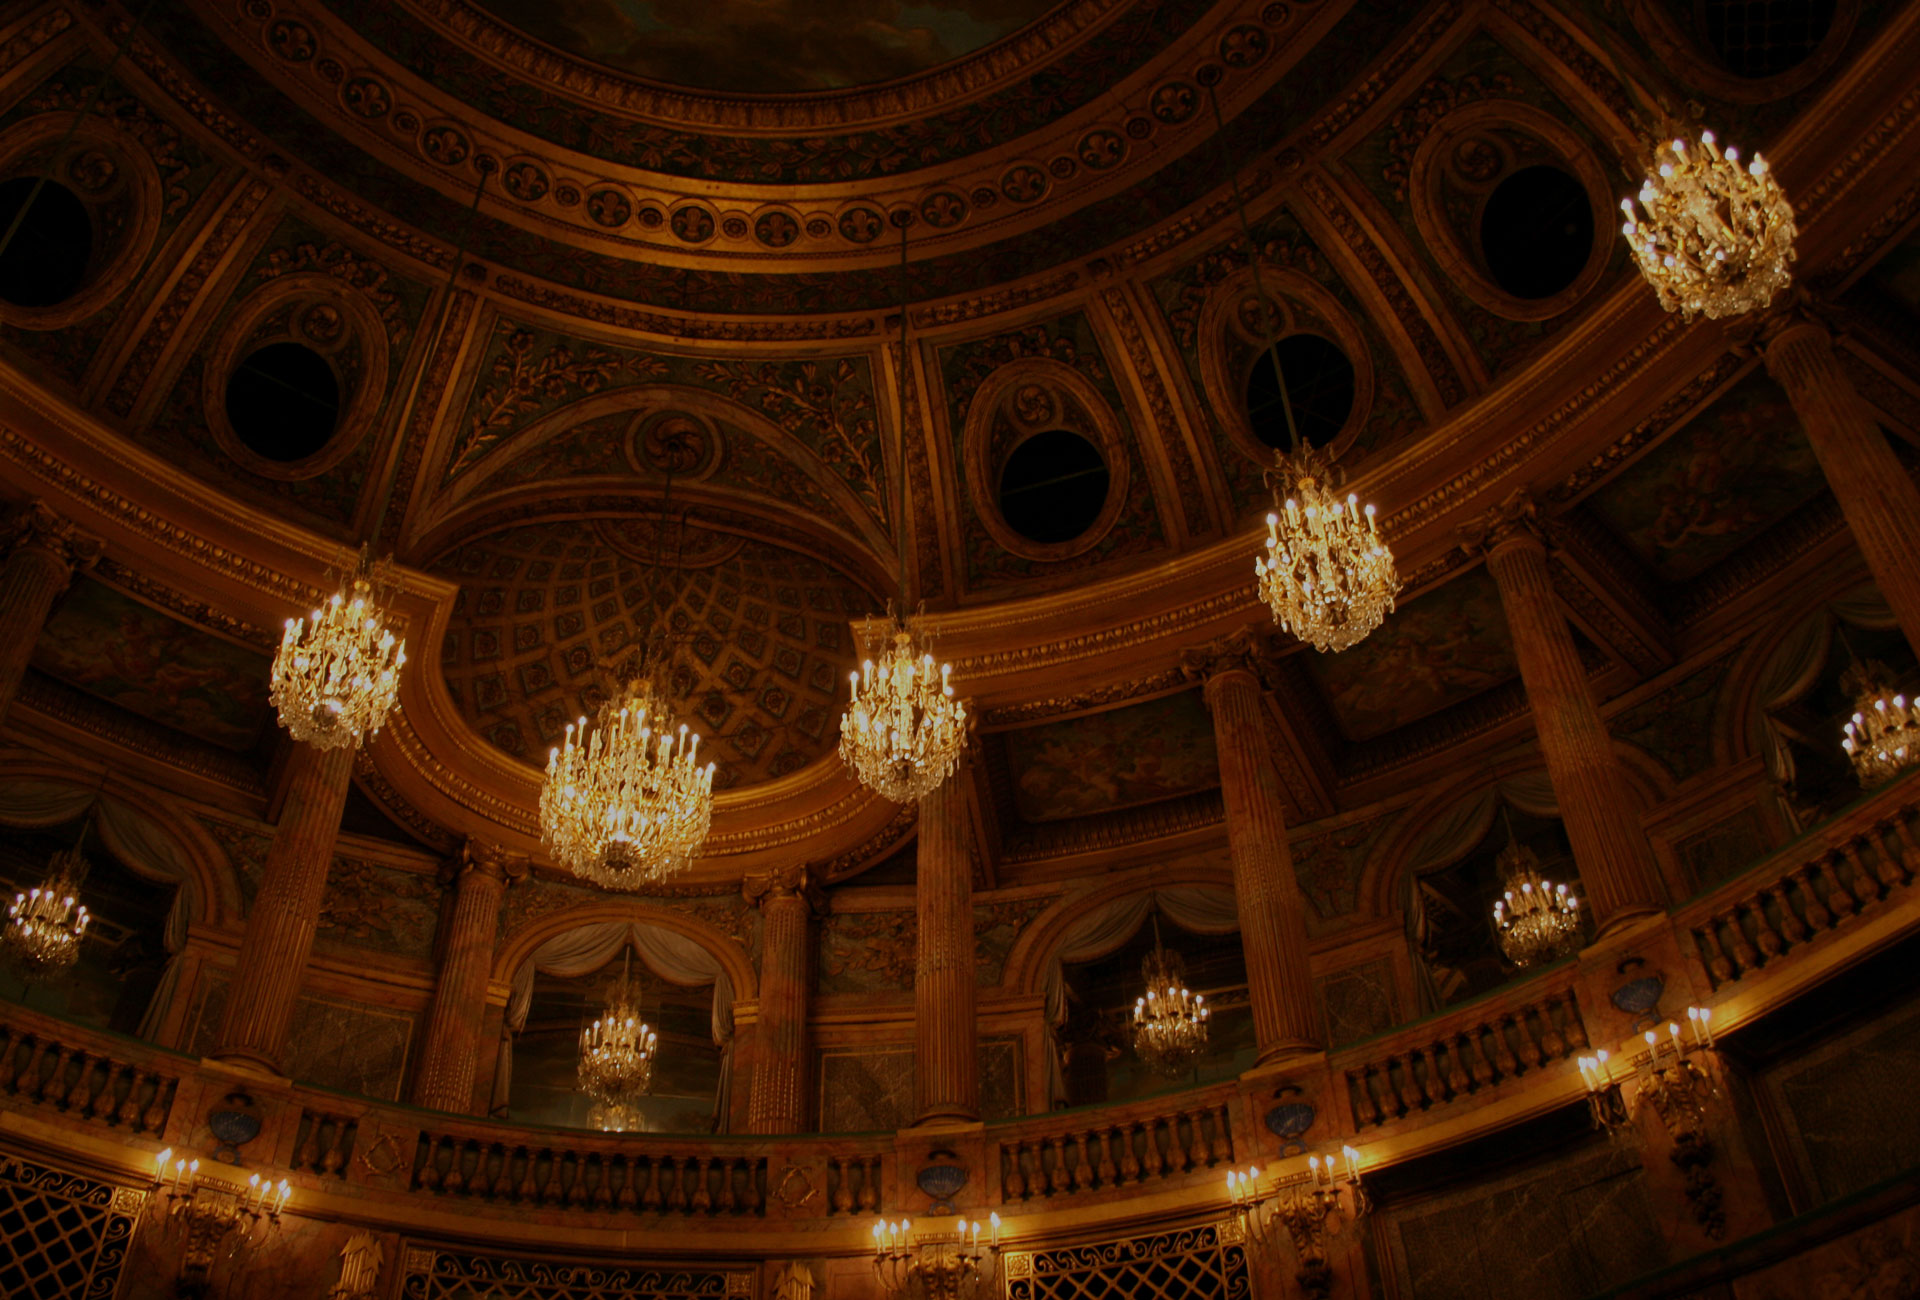 Opera House - Chandaliers